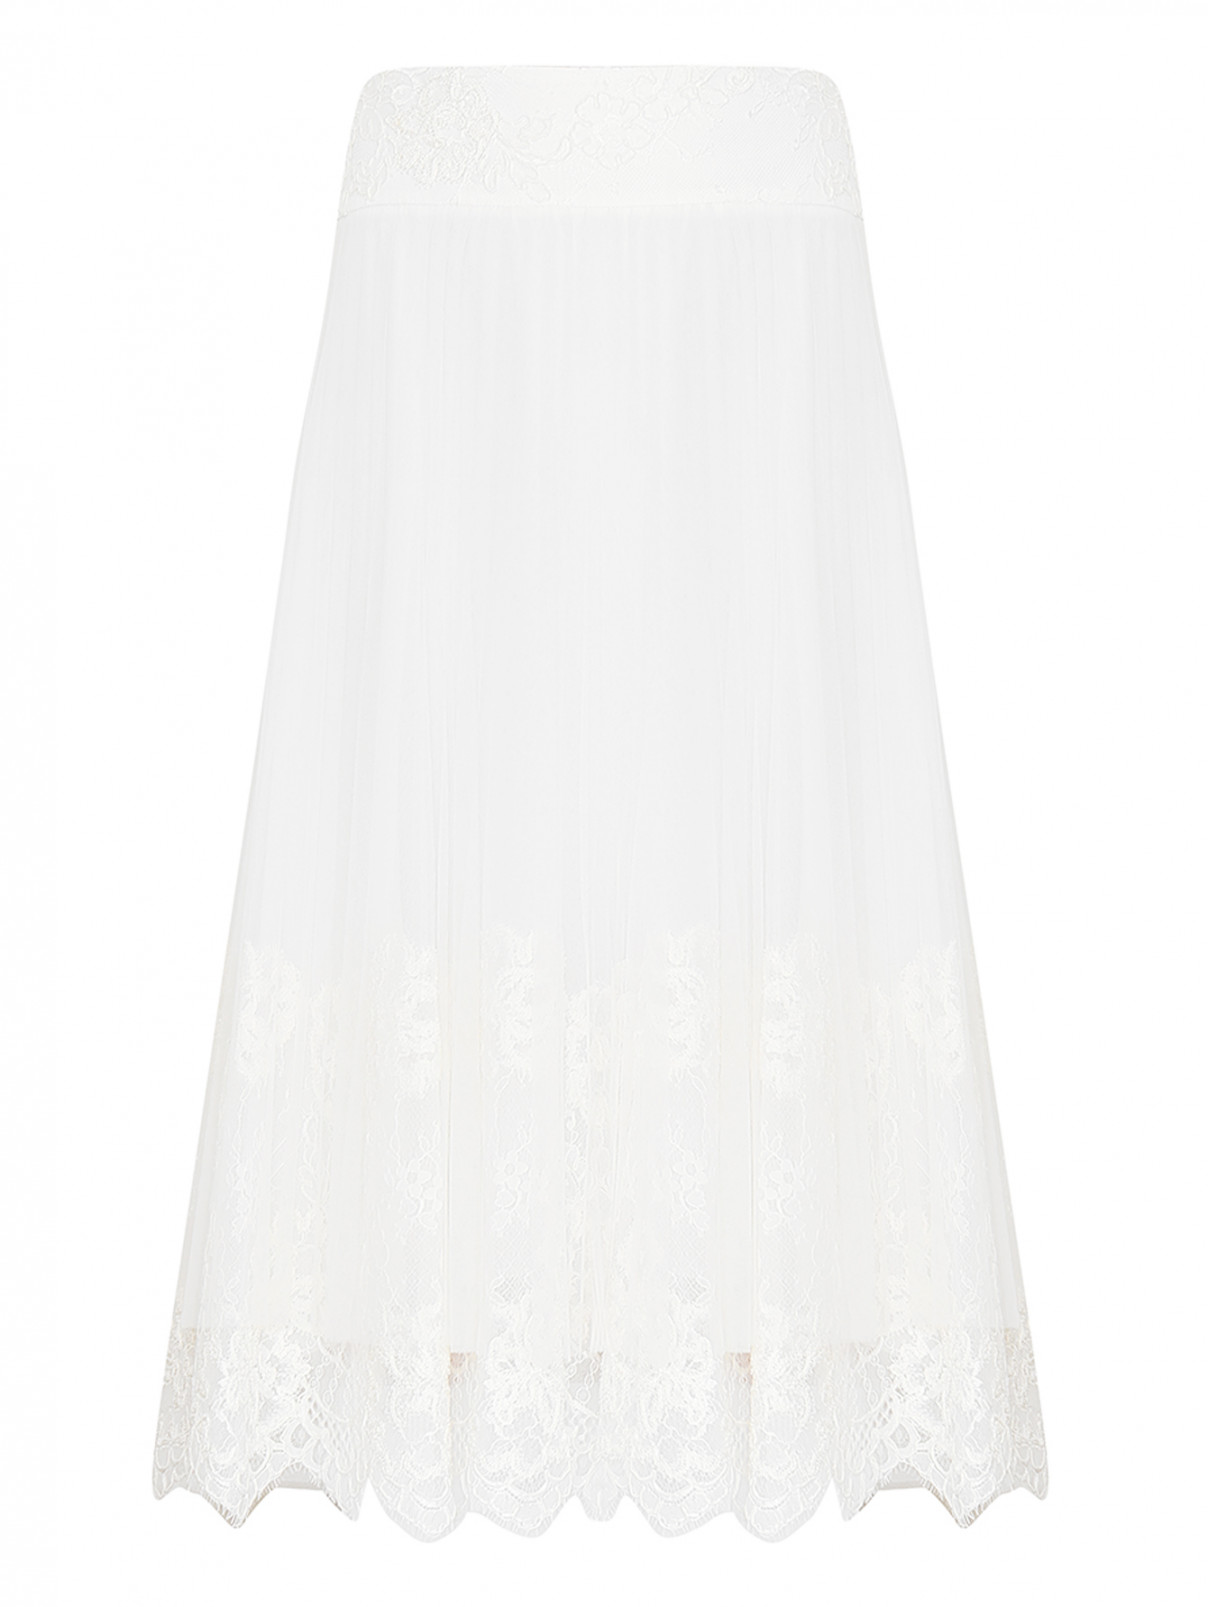 Юбка из сетки декорированная кружевом Ermanno Scervino  –  Общий вид  – Цвет:  Белый